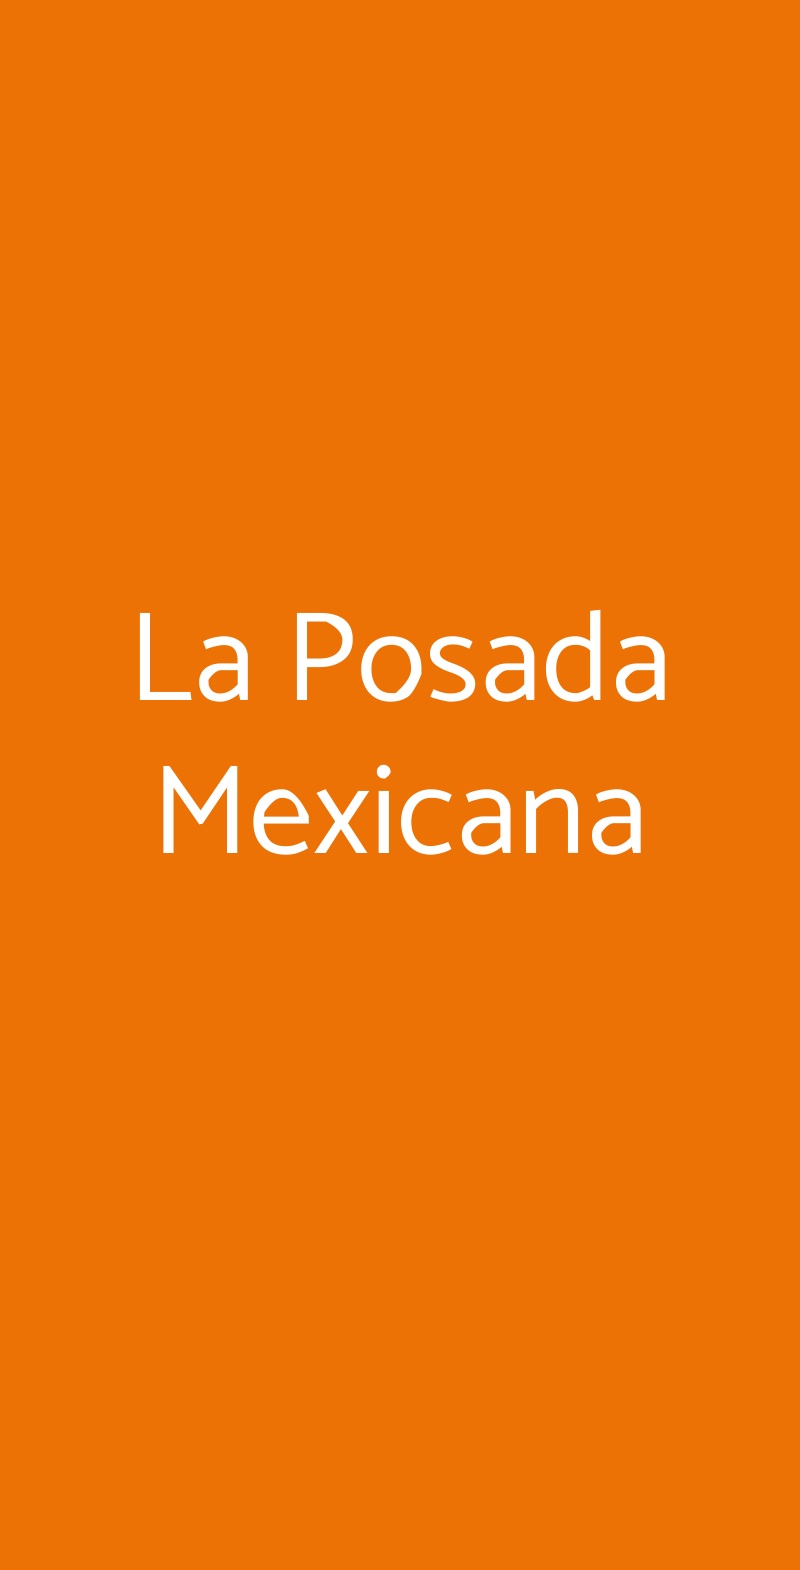 La Posada Mexicana Torino menù 1 pagina